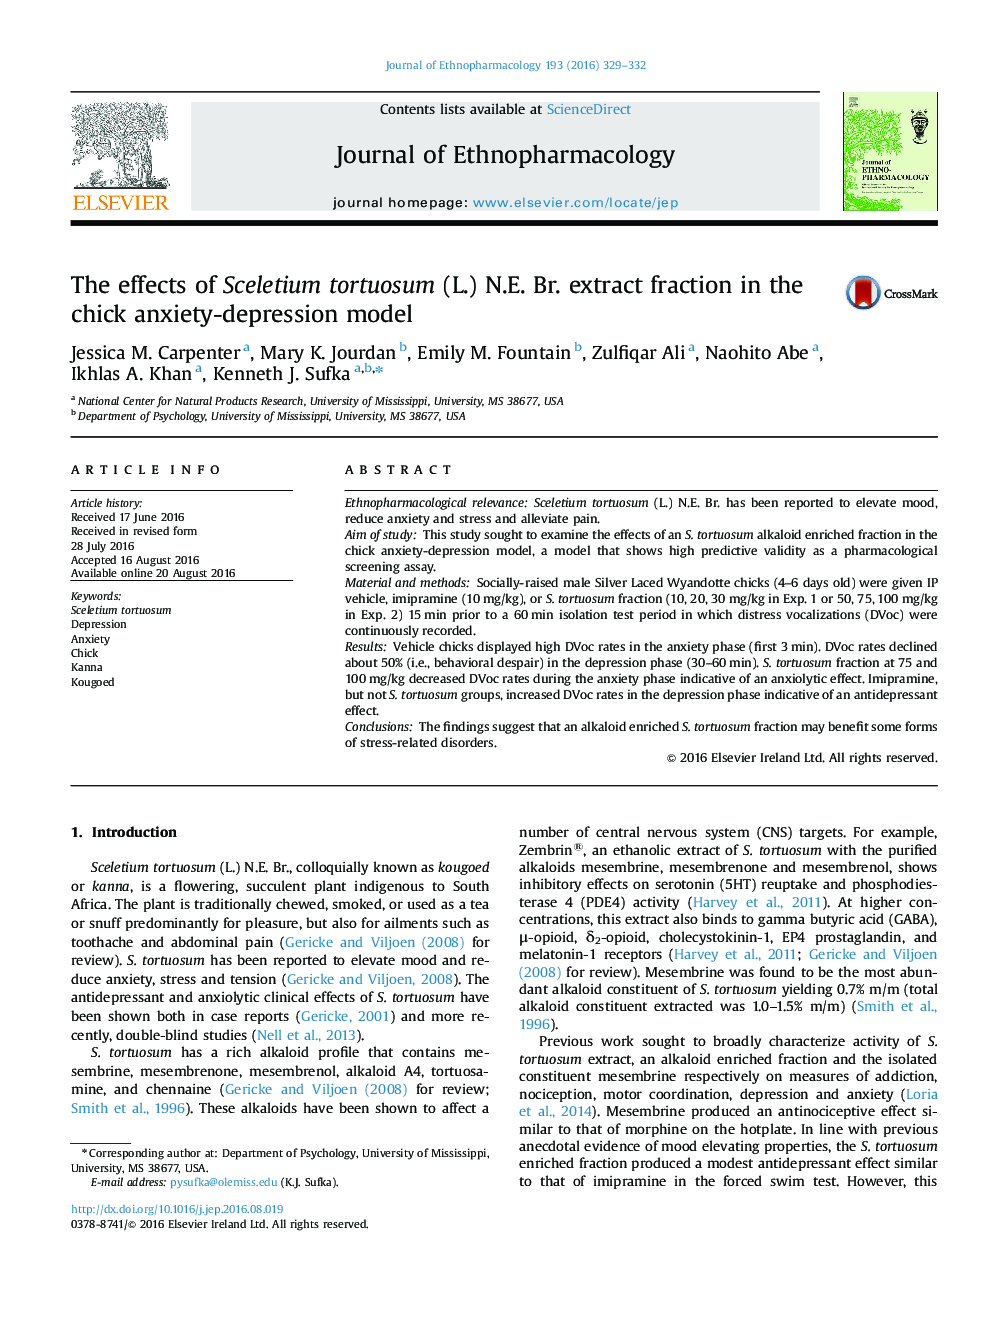 اثرات بخش عصاره Sceletium tortuosum (L.) N.E. Br. در مدل اضطراب افسردگی جوجه 